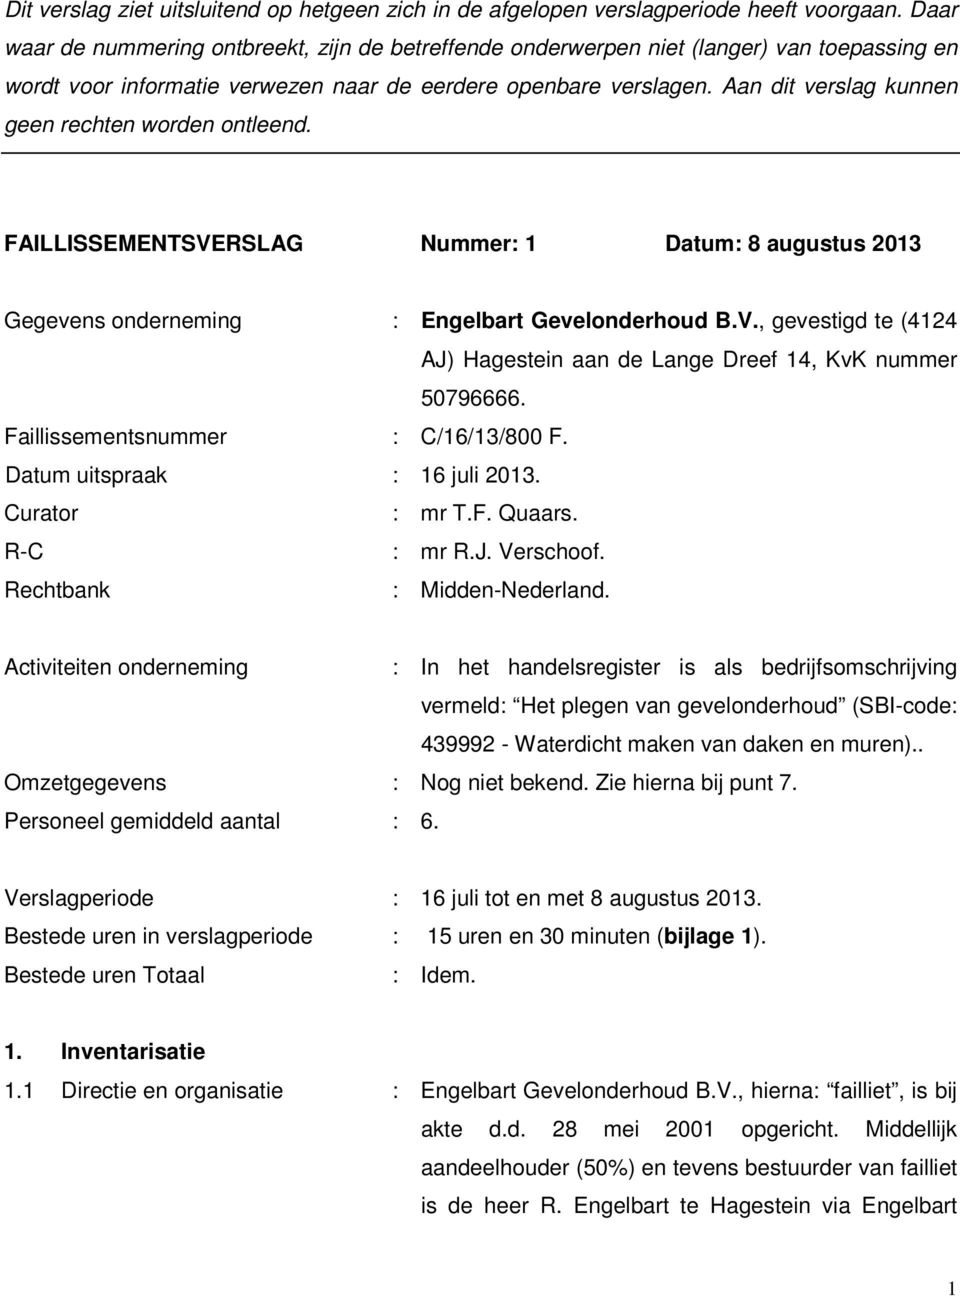 Aan dit verslag kunnen geen rechten worden ontleend. FAILLISSEMENTSVERSLAG Nummer: 1 Datum: 8 augustus 2013 Gegevens onderneming : Engelbart Gevelonderhoud B.V., gevestigd te (4124 AJ) Hagestein aan de Lange Dreef 14, KvK nummer 50796666.